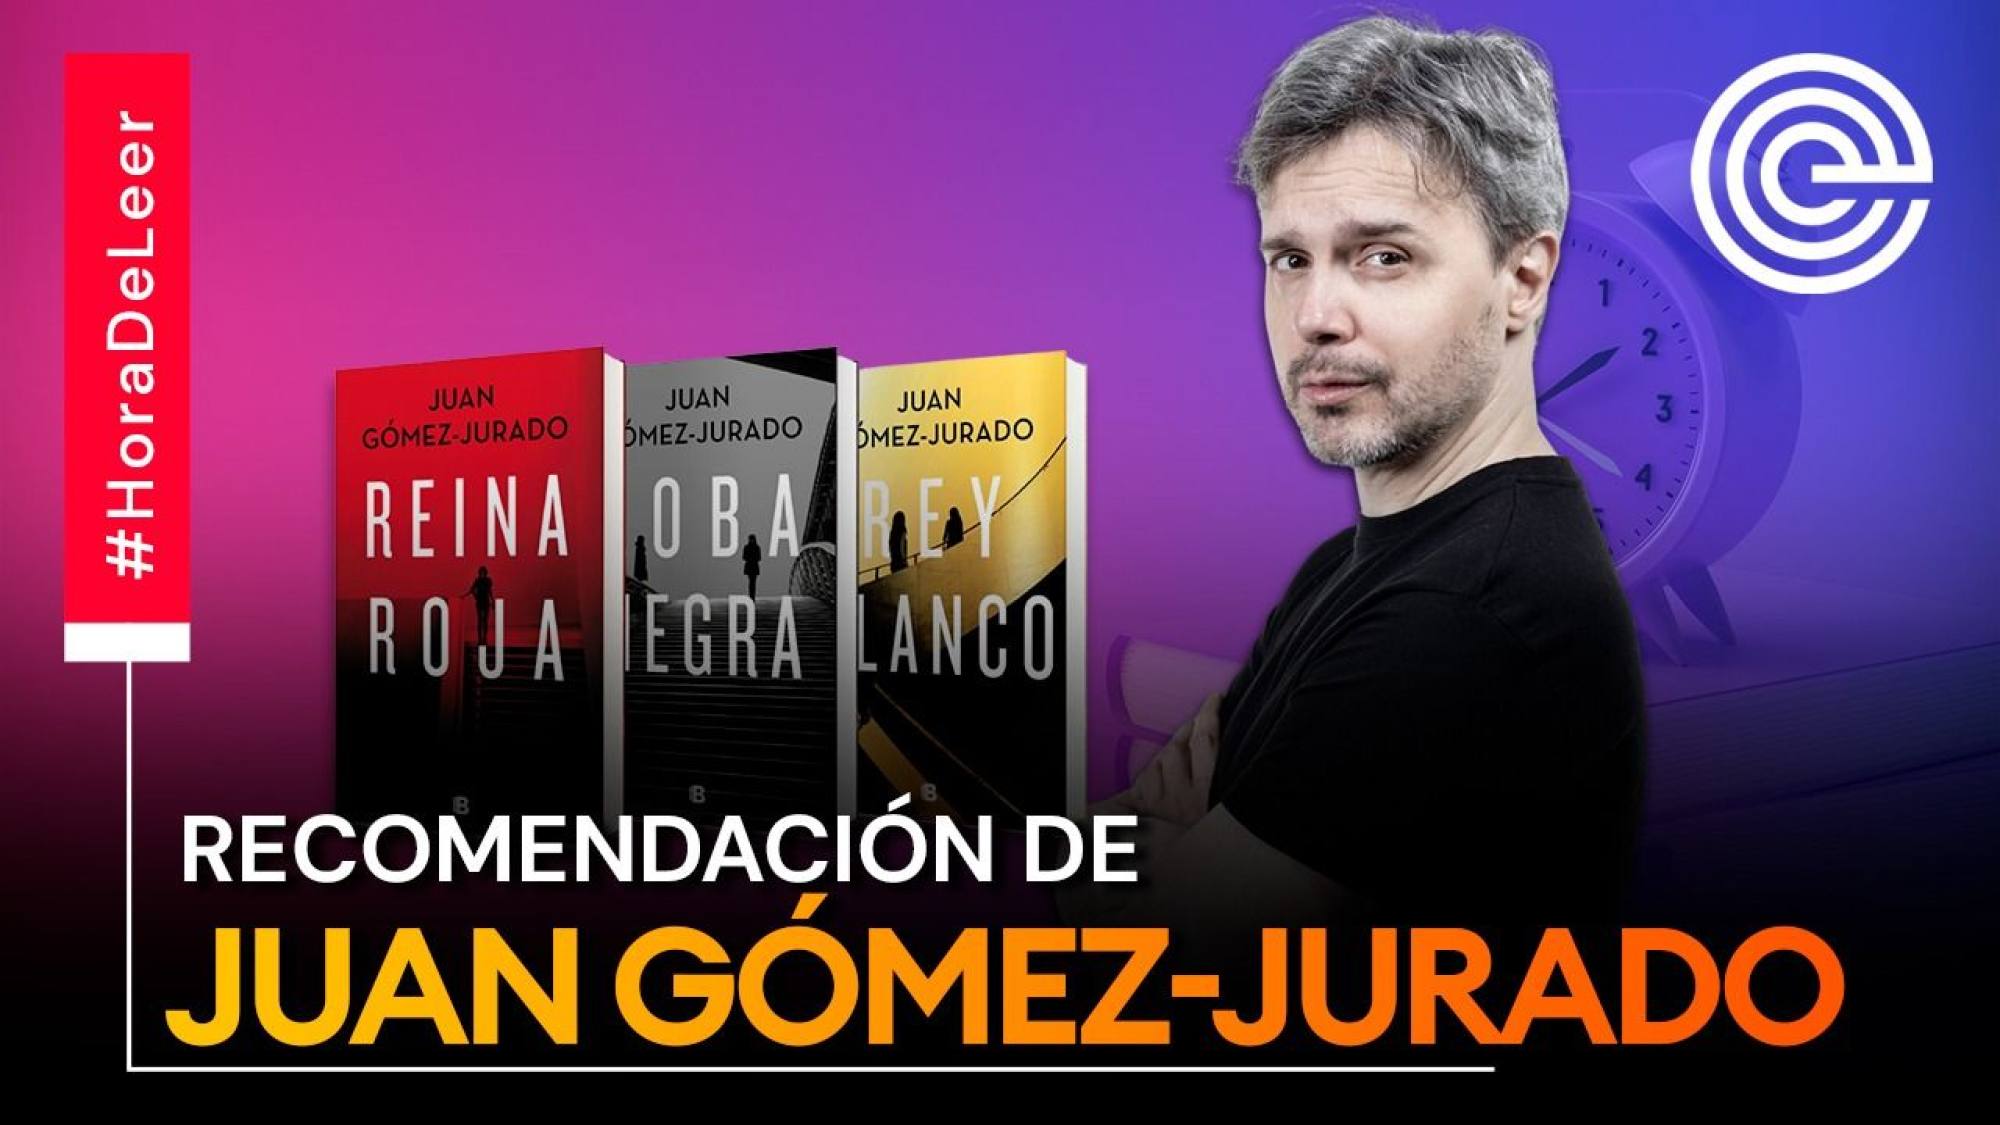 Recomendación de la saga 'Reina Roja' del autor Juan Gómez-Jurado, Epicentro TV